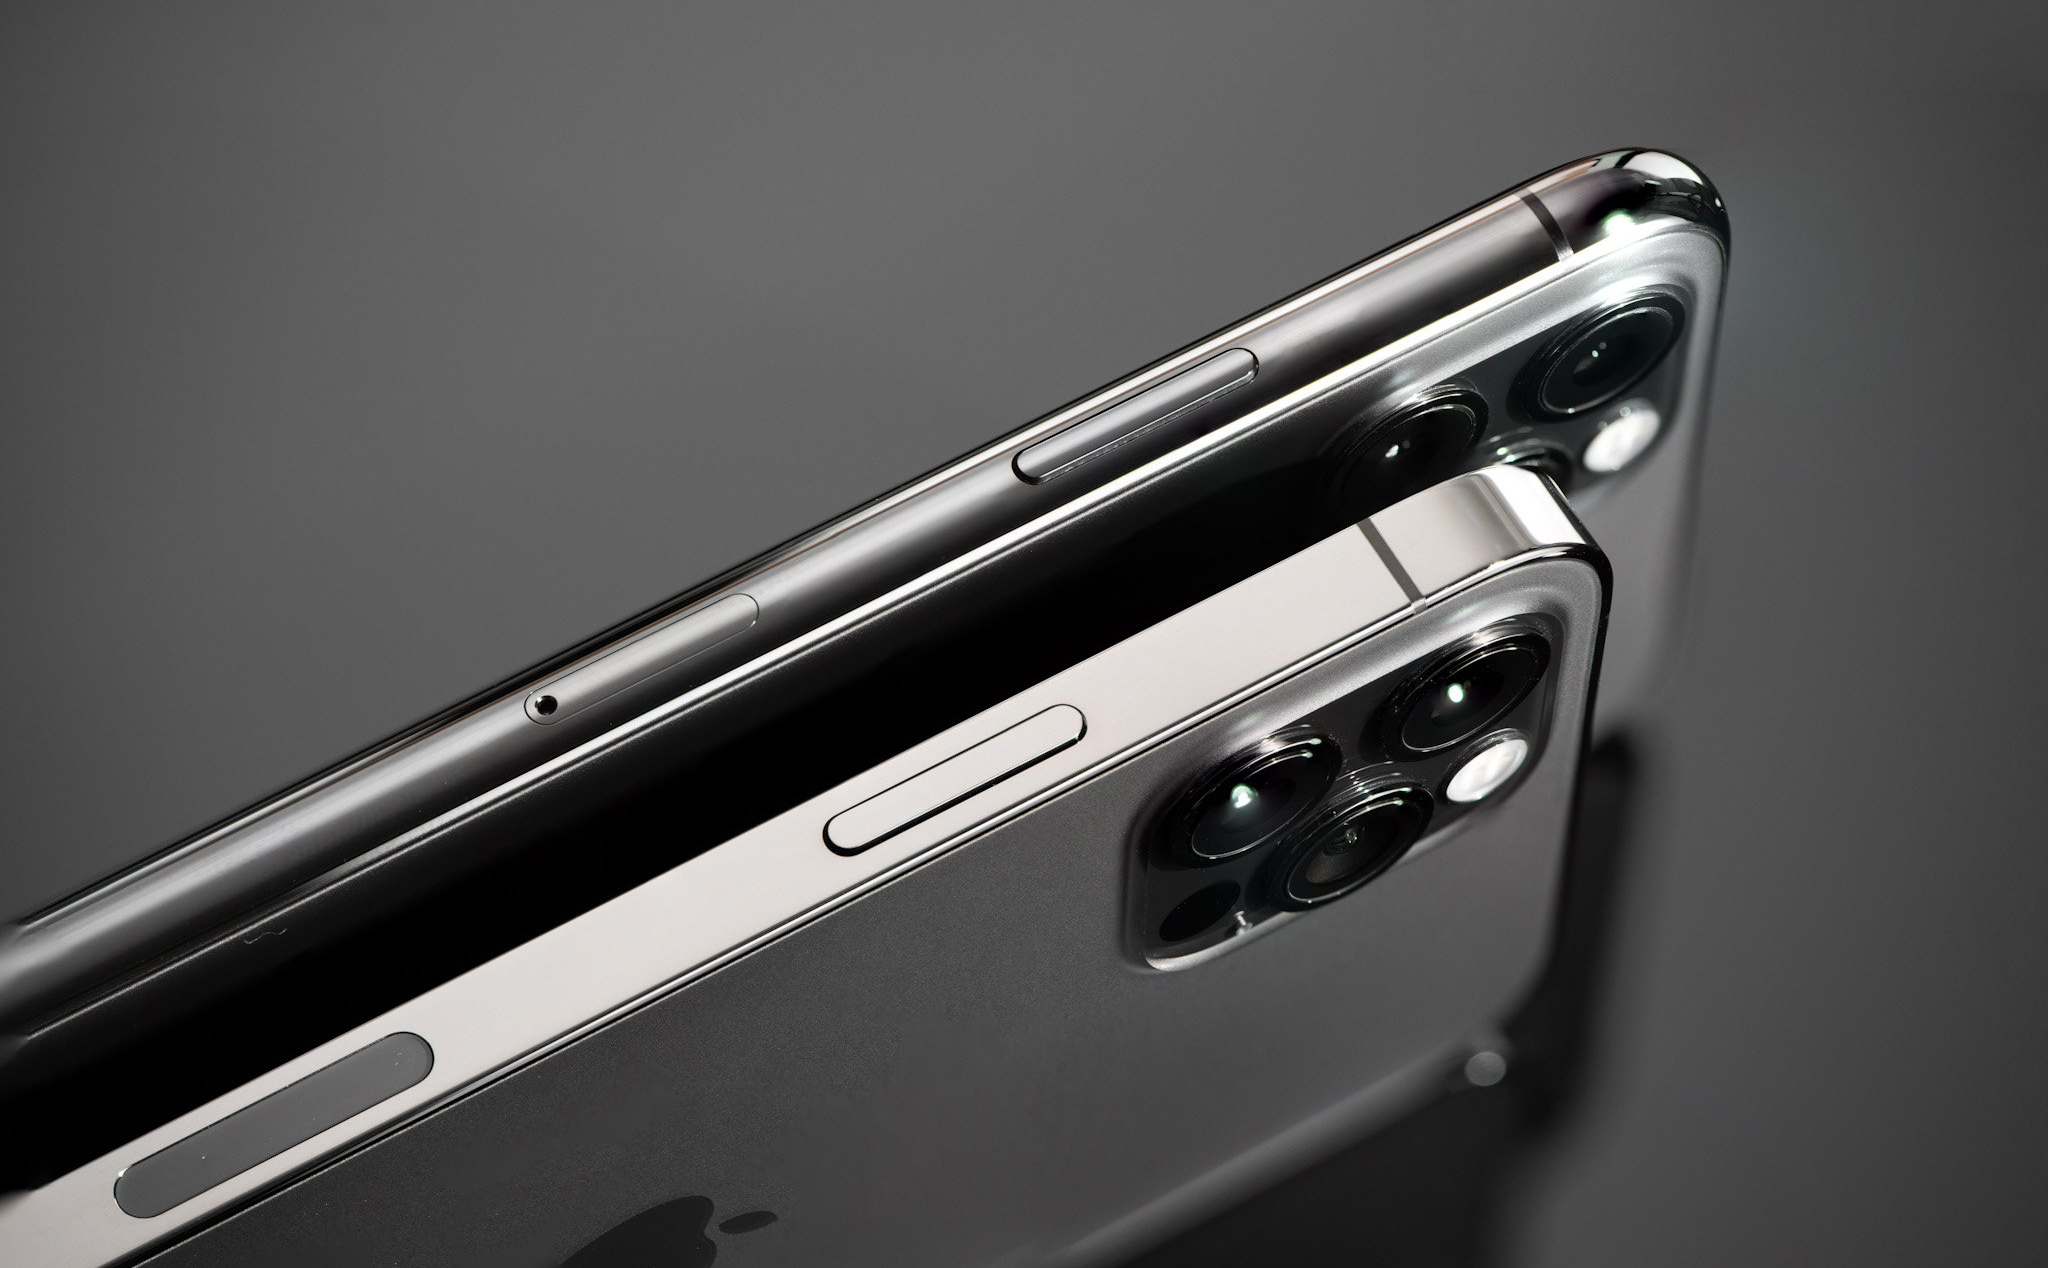 iPhone 13 sẽ hỗ trợ công nghệ 5G mmWave ở nhiều thị trường hơn so với thế hệ hiện tại